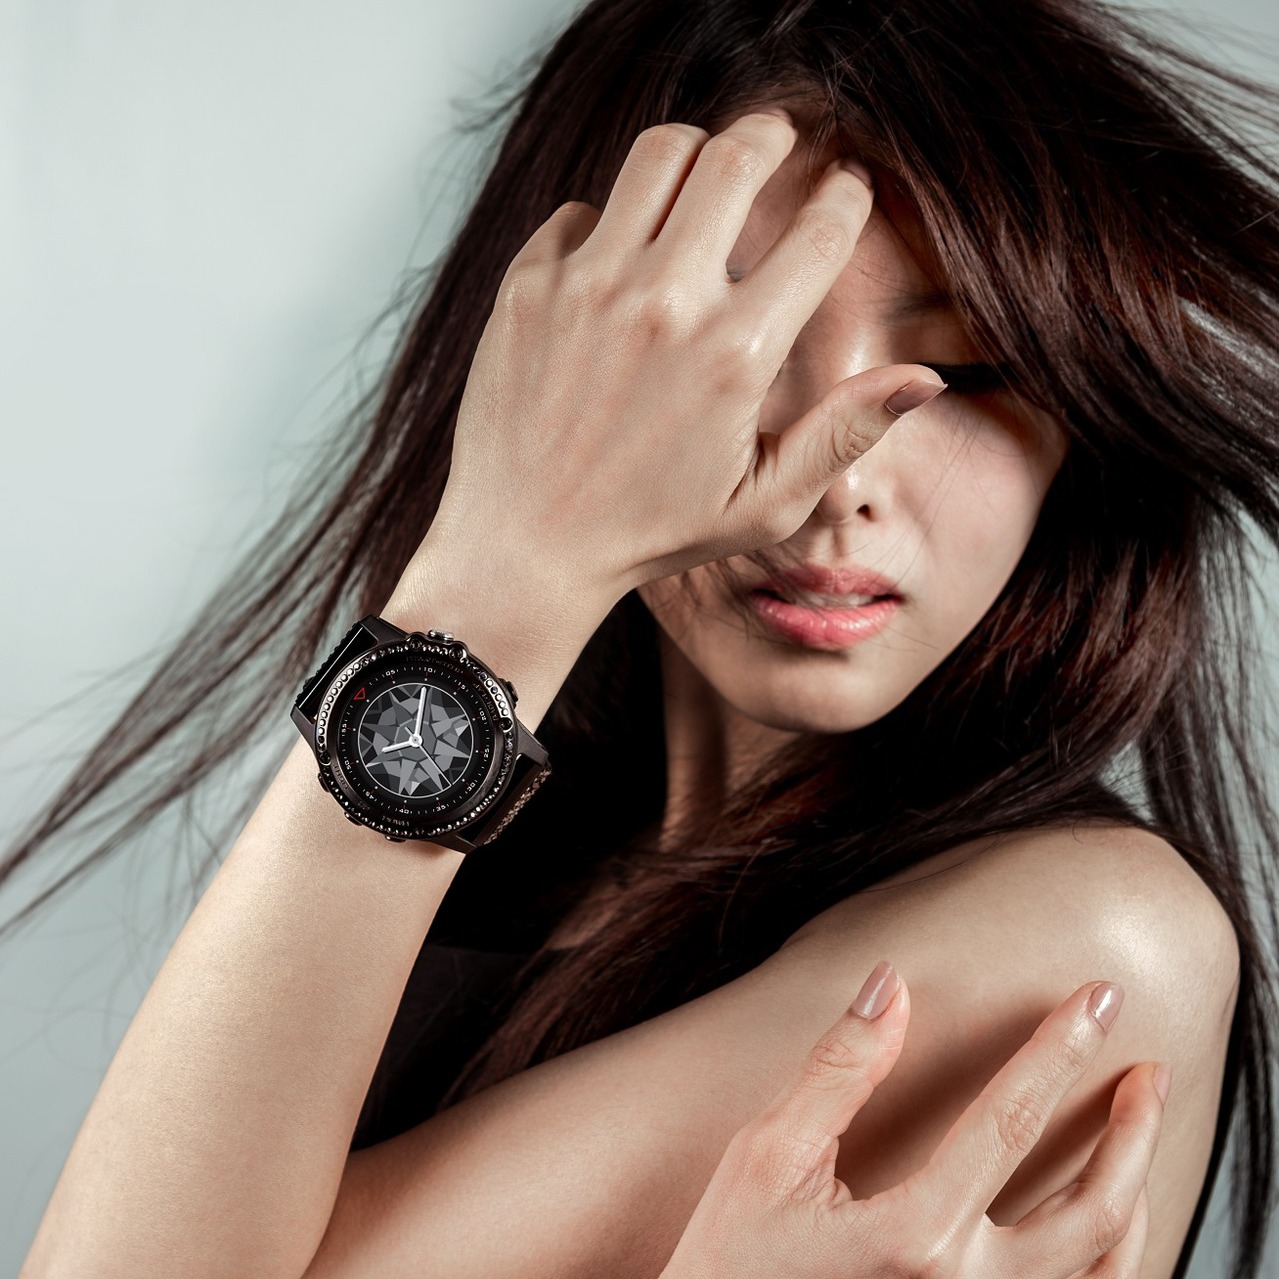 智慧手表、手環 設計越來越時尚